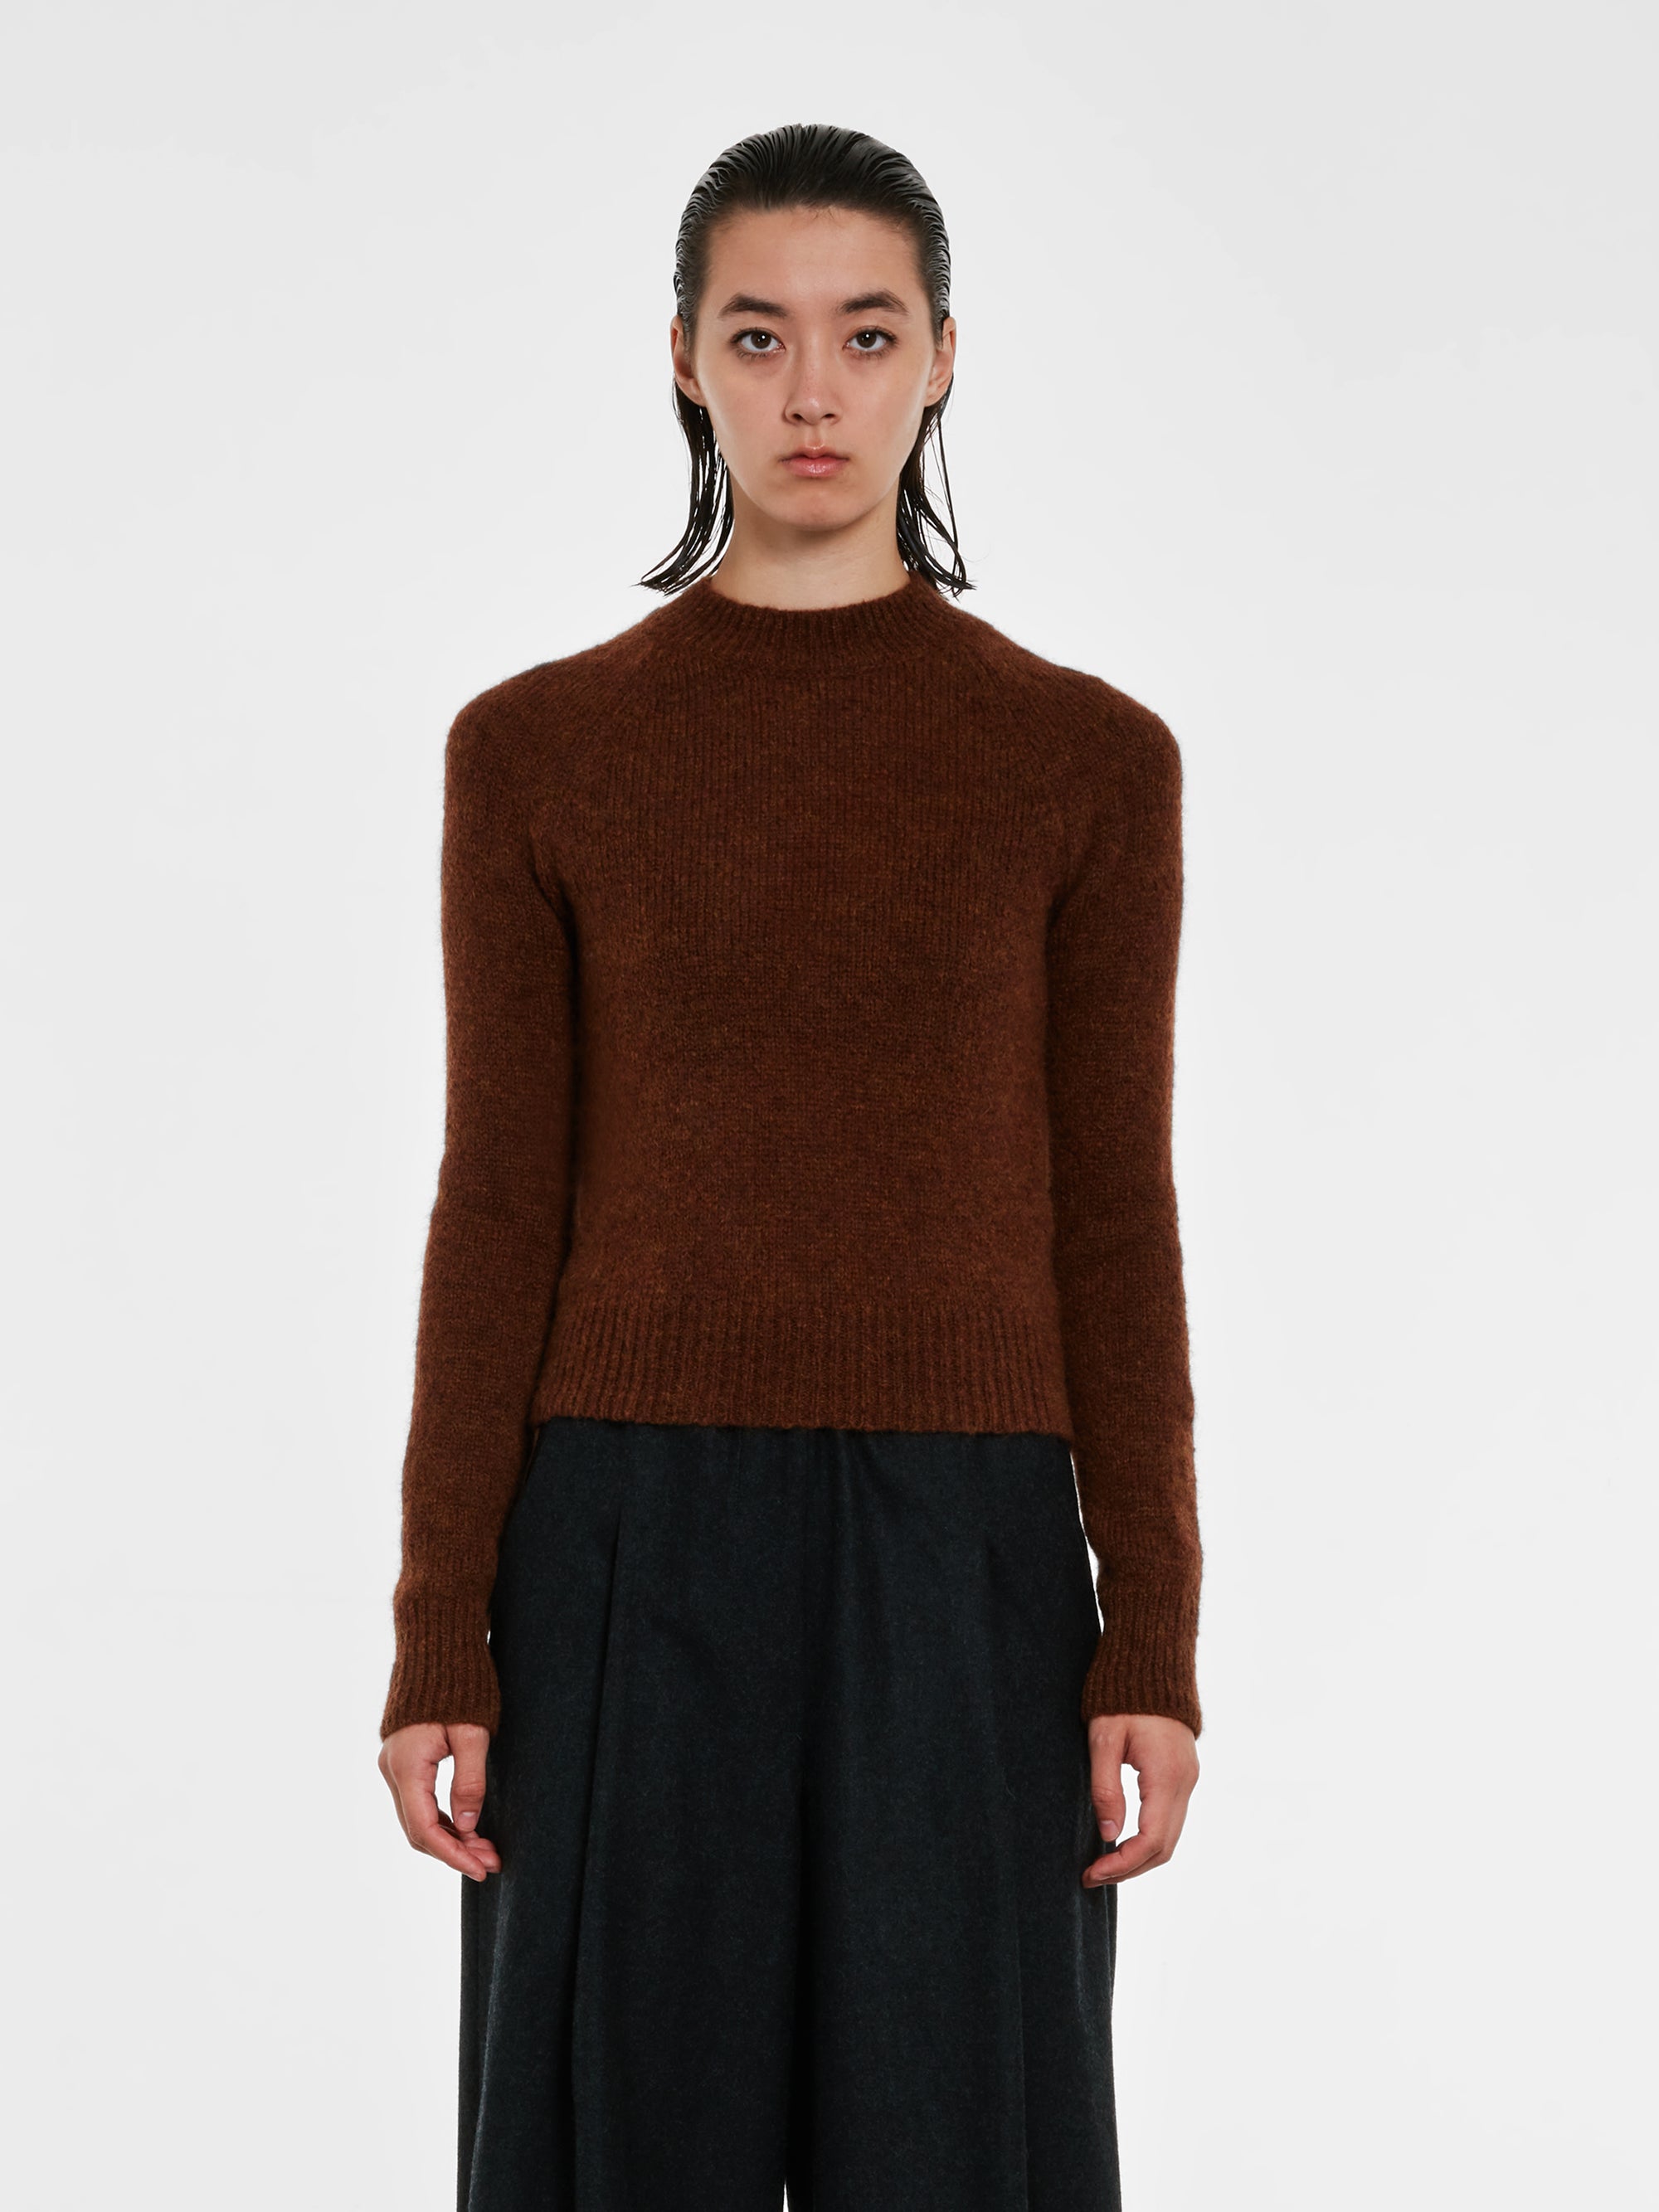 Dries Van Noten - Women’s Fitted Sweater - (Brown) view 1